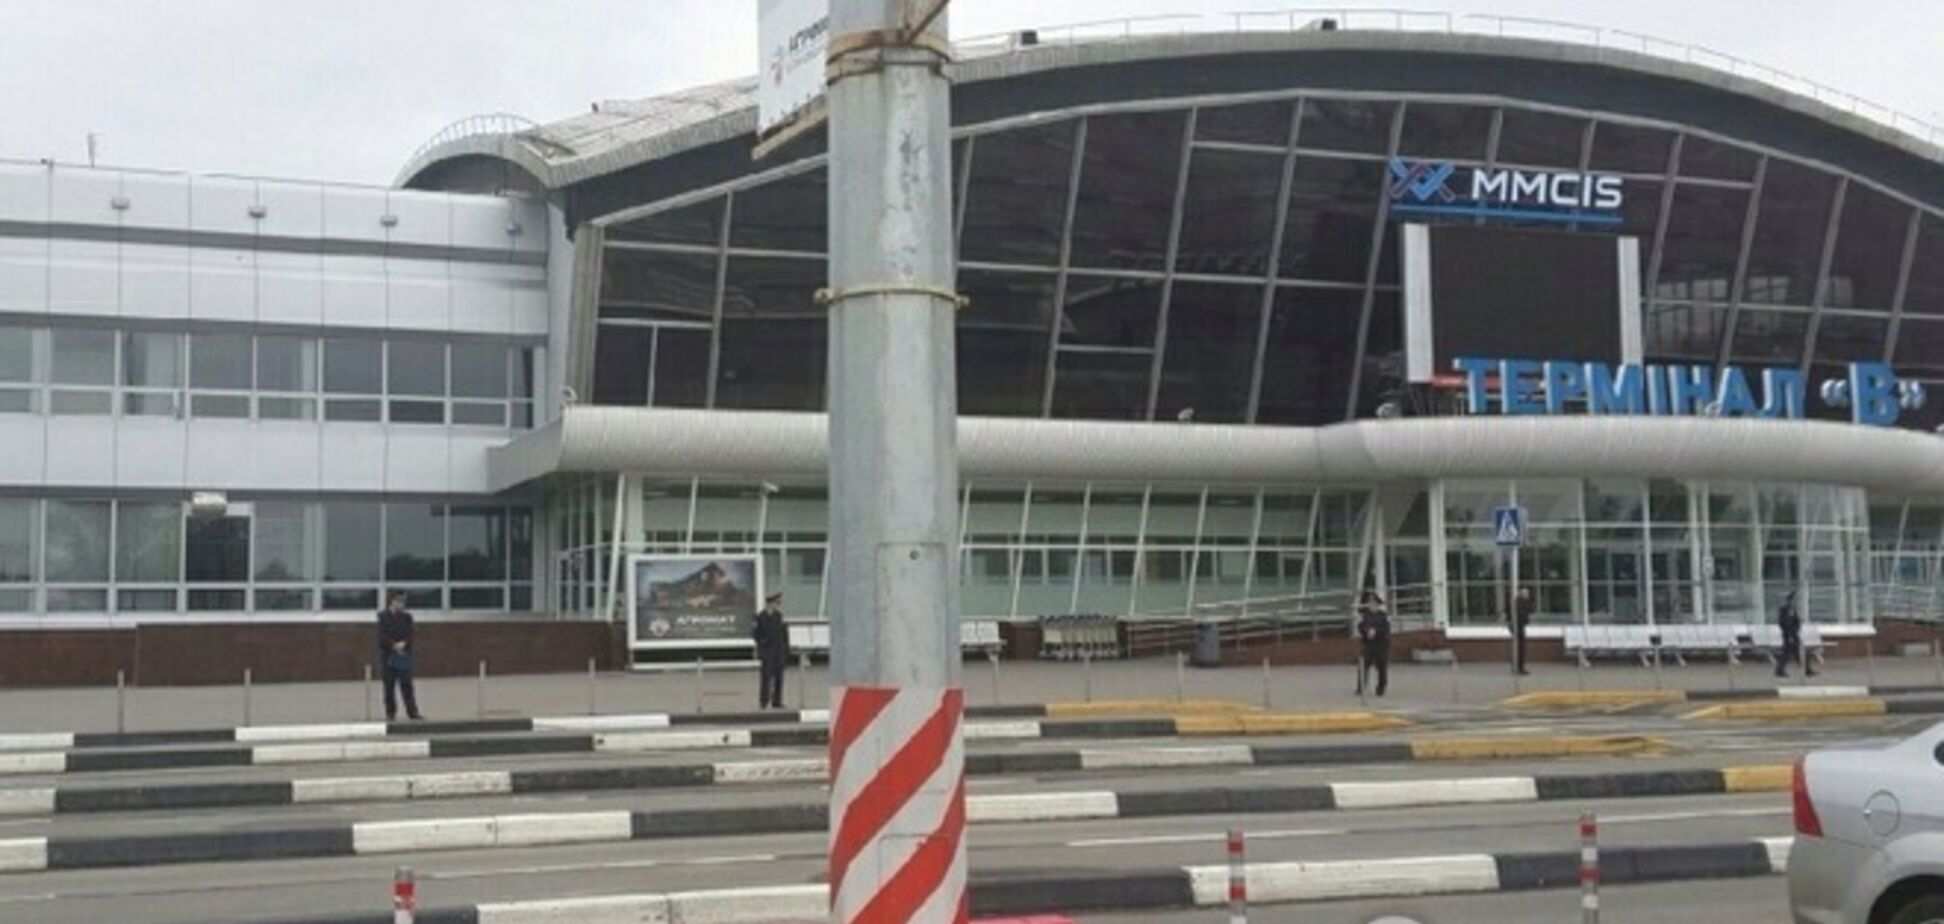 Неизвестный сообщил о минировании аэропорта 'Борисполь'. Пассажиры и персонал эвакуированы